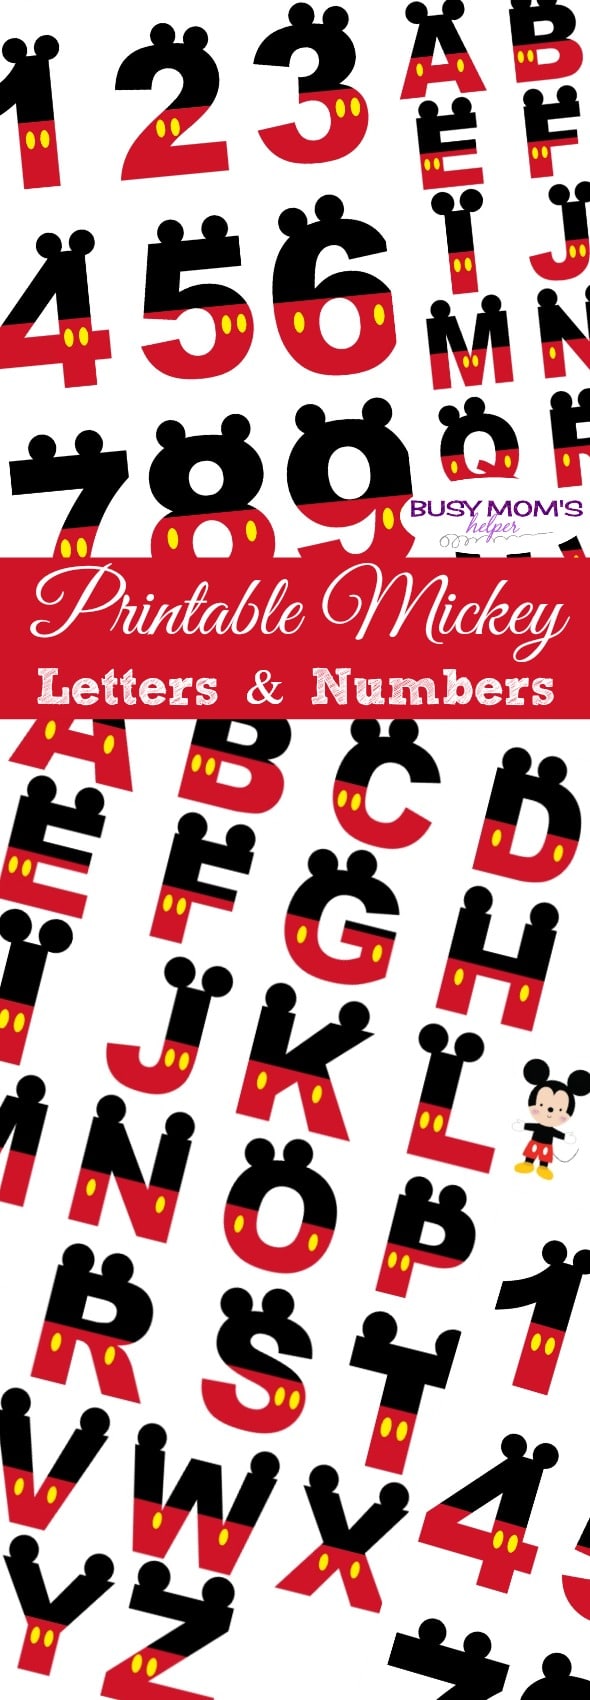 Free Printable Mickey Letters & Numbers #disney #mickeymouse #banner #printable #freeprintable #mickeyletters #mickeynumbers